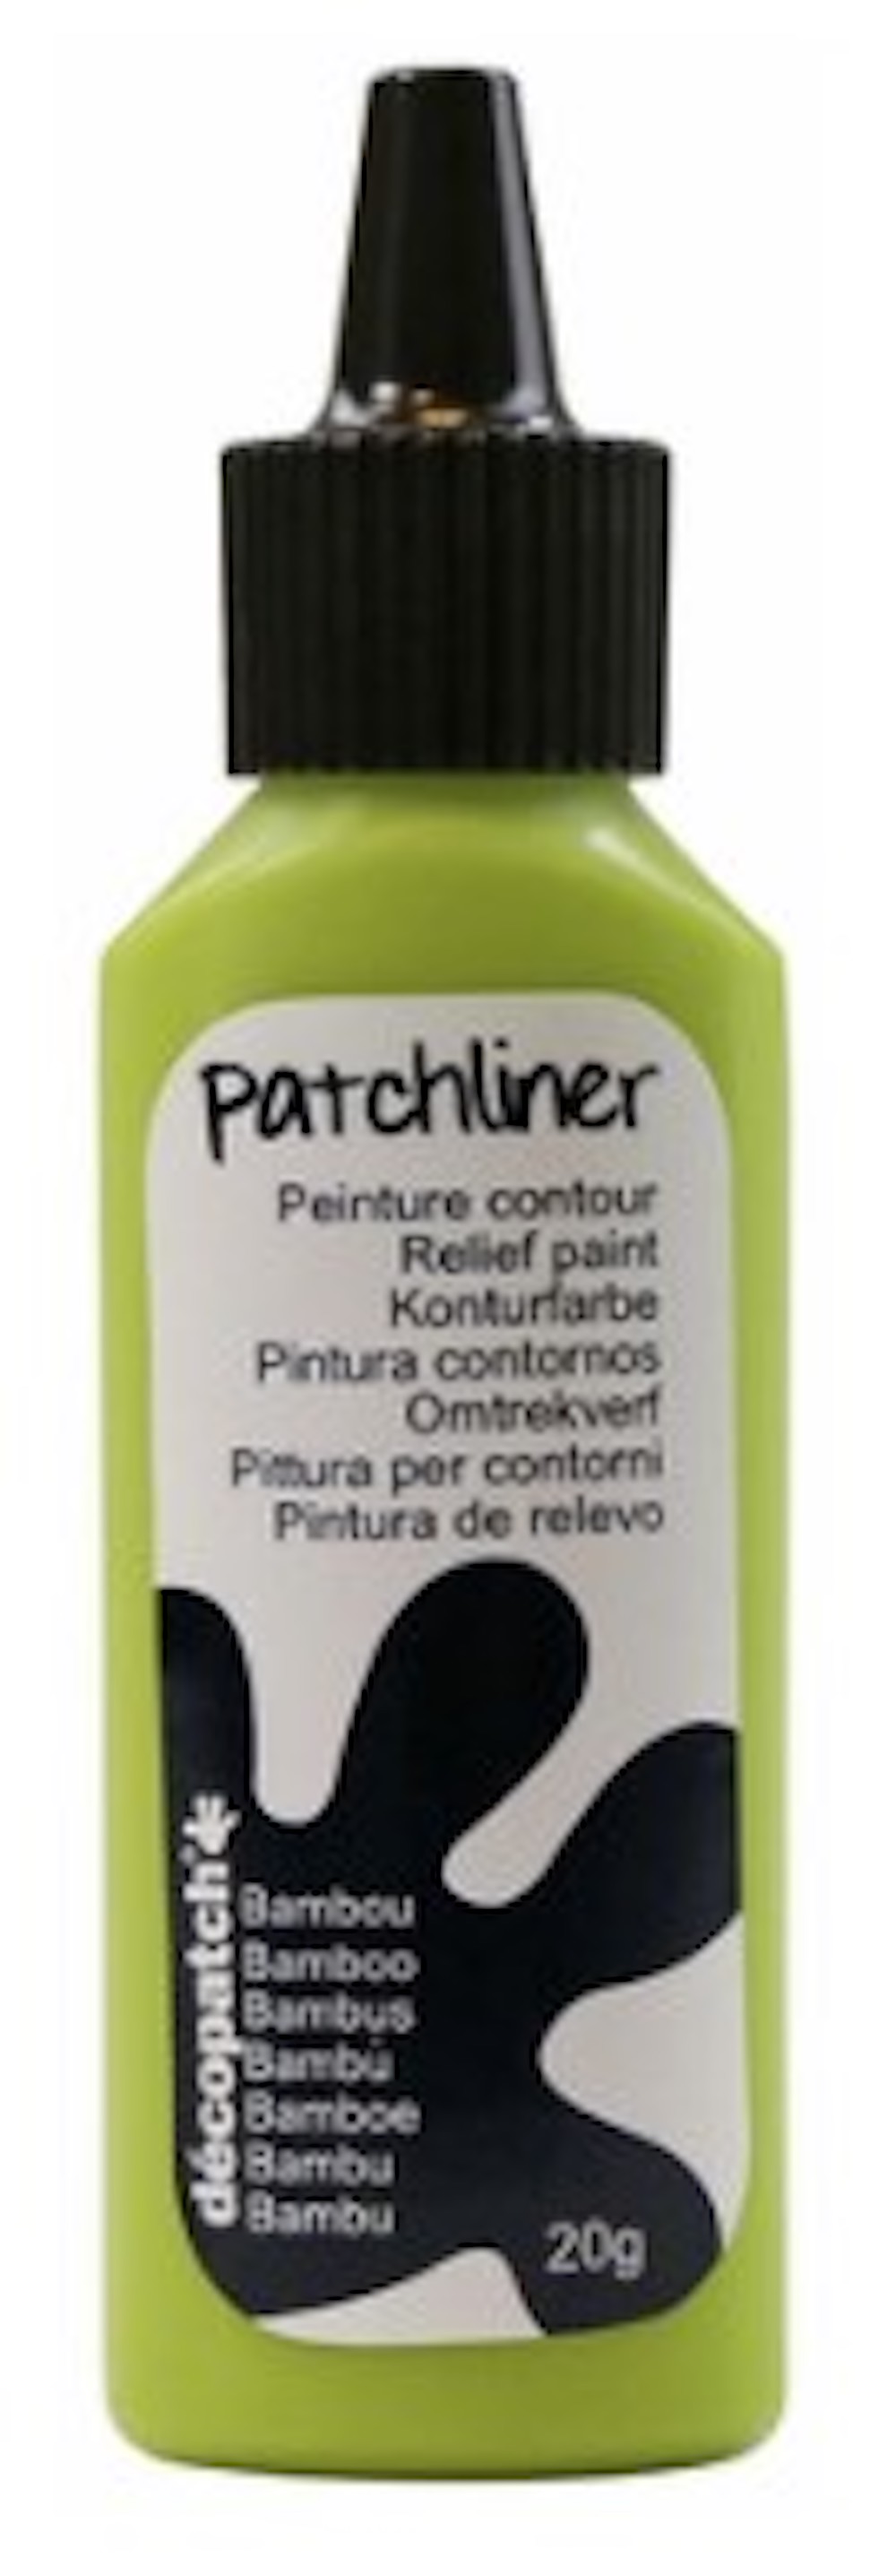 Décopatch Patchliner 20g  -verschiedene Farben-